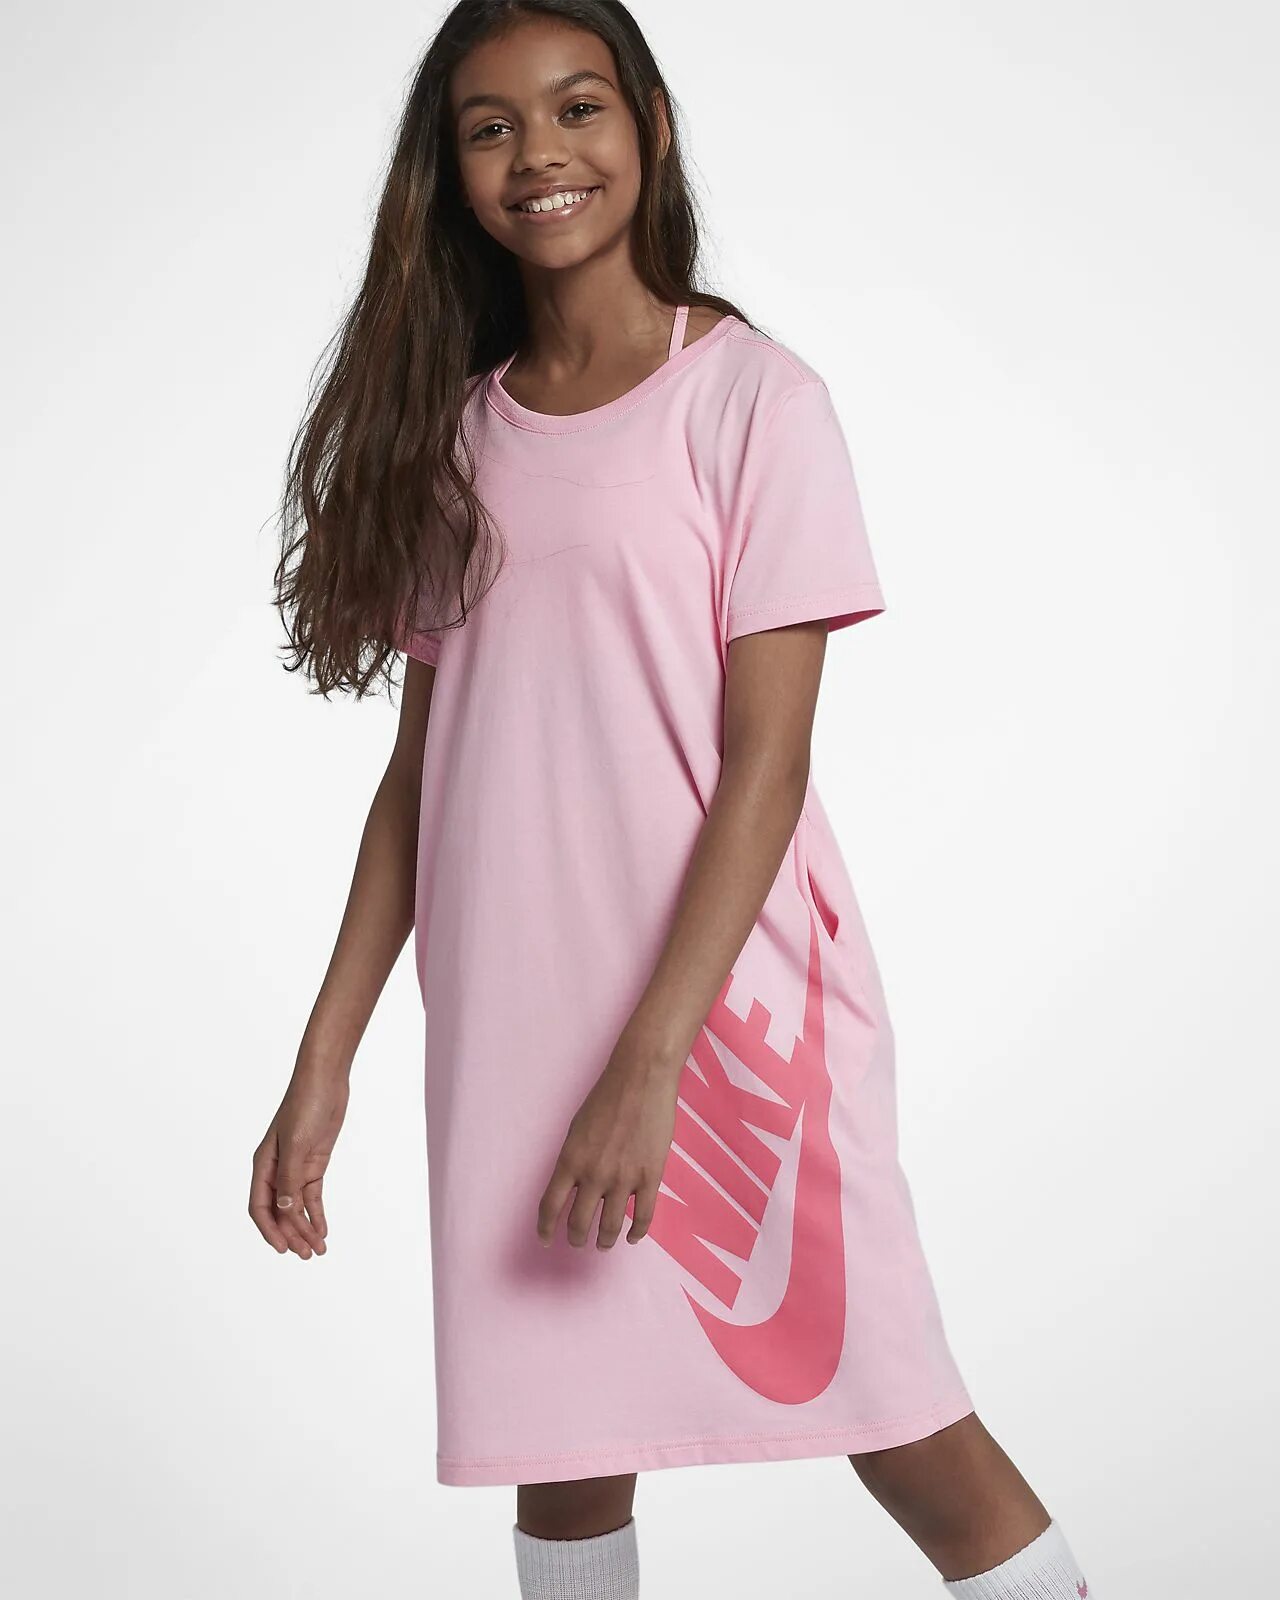 Платье футболка для девочки. Длинные футболки для девочек. Платье футболка розовое. Платье футболка для девочки 12 лет.